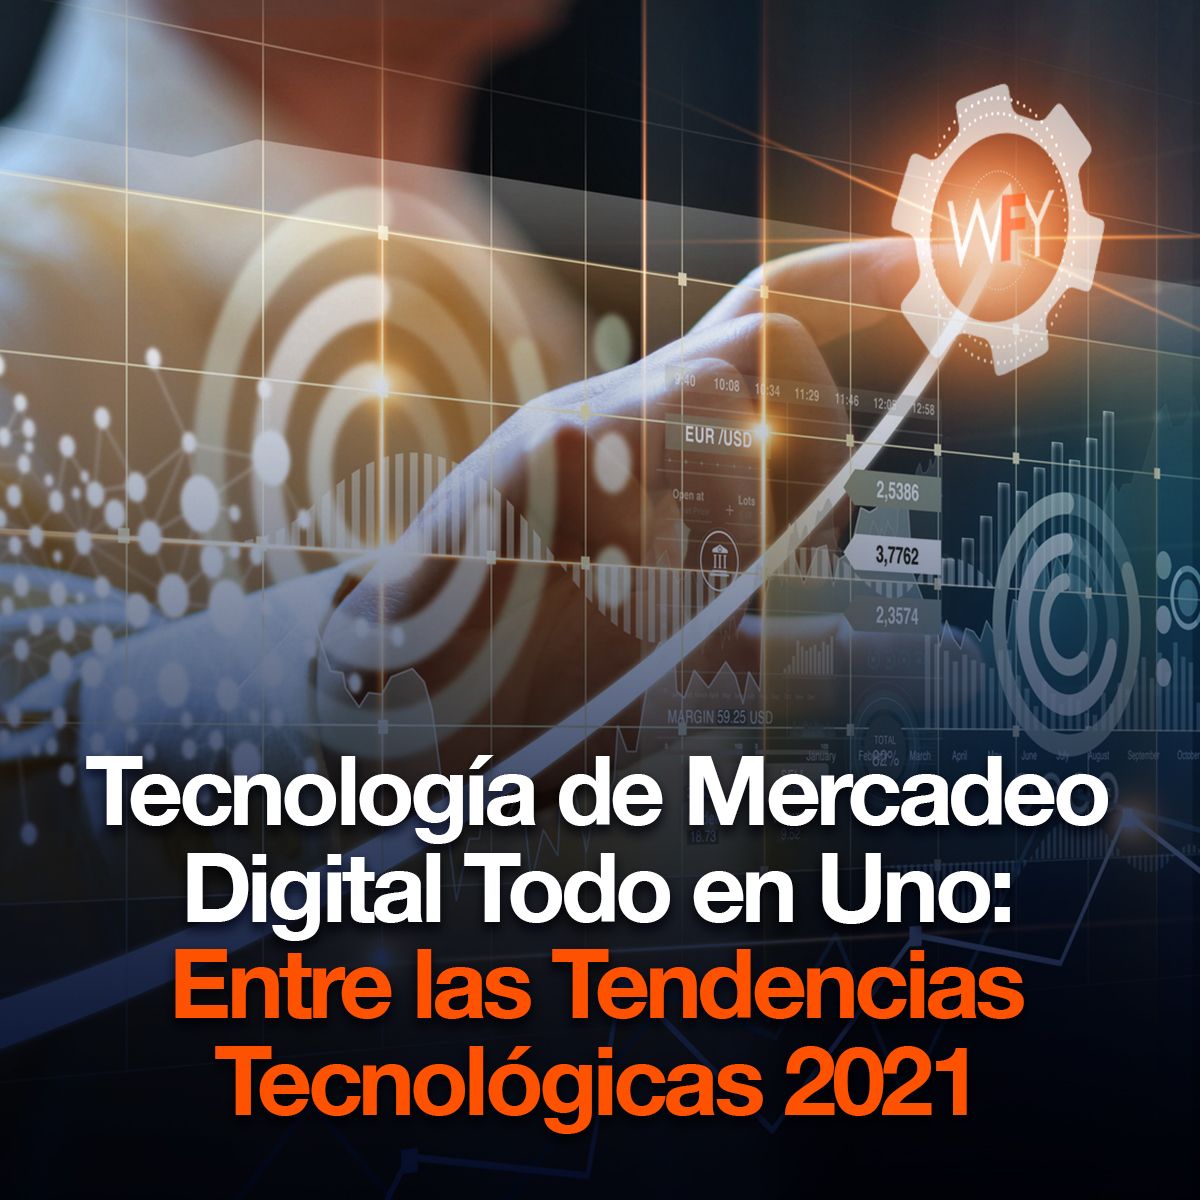 Tecnología de Mercadeo Digital Todo en Uno: Entre las Tendencias Tecnológicas 2021